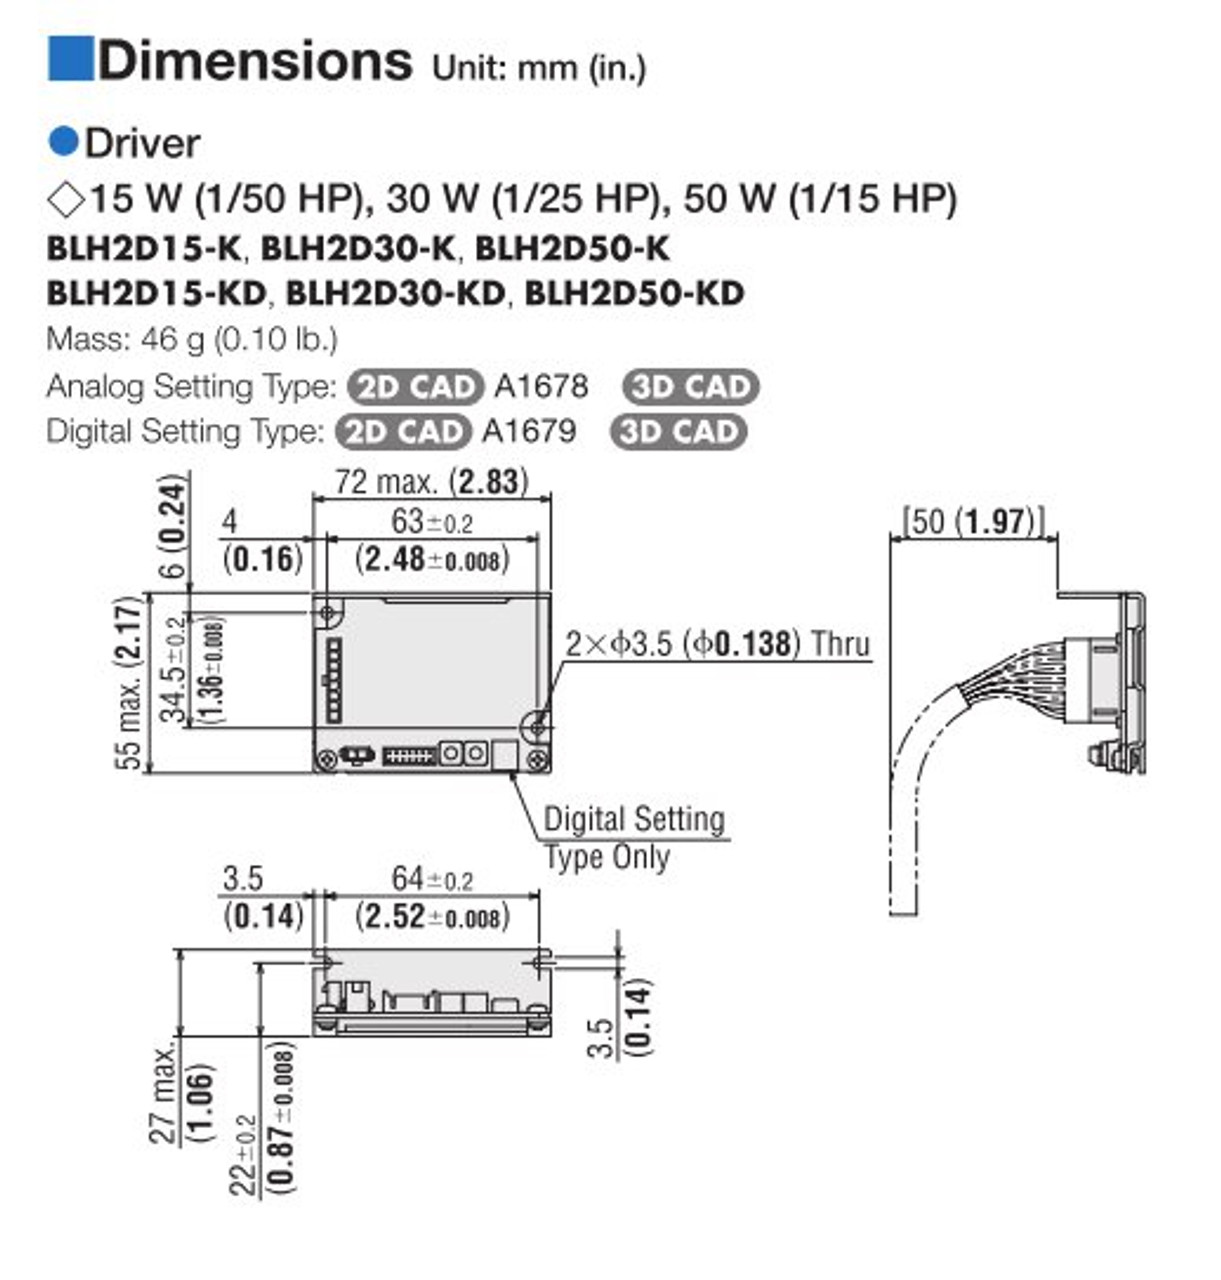 BLHM015K-30 / BLH2D15-K - Dimensions